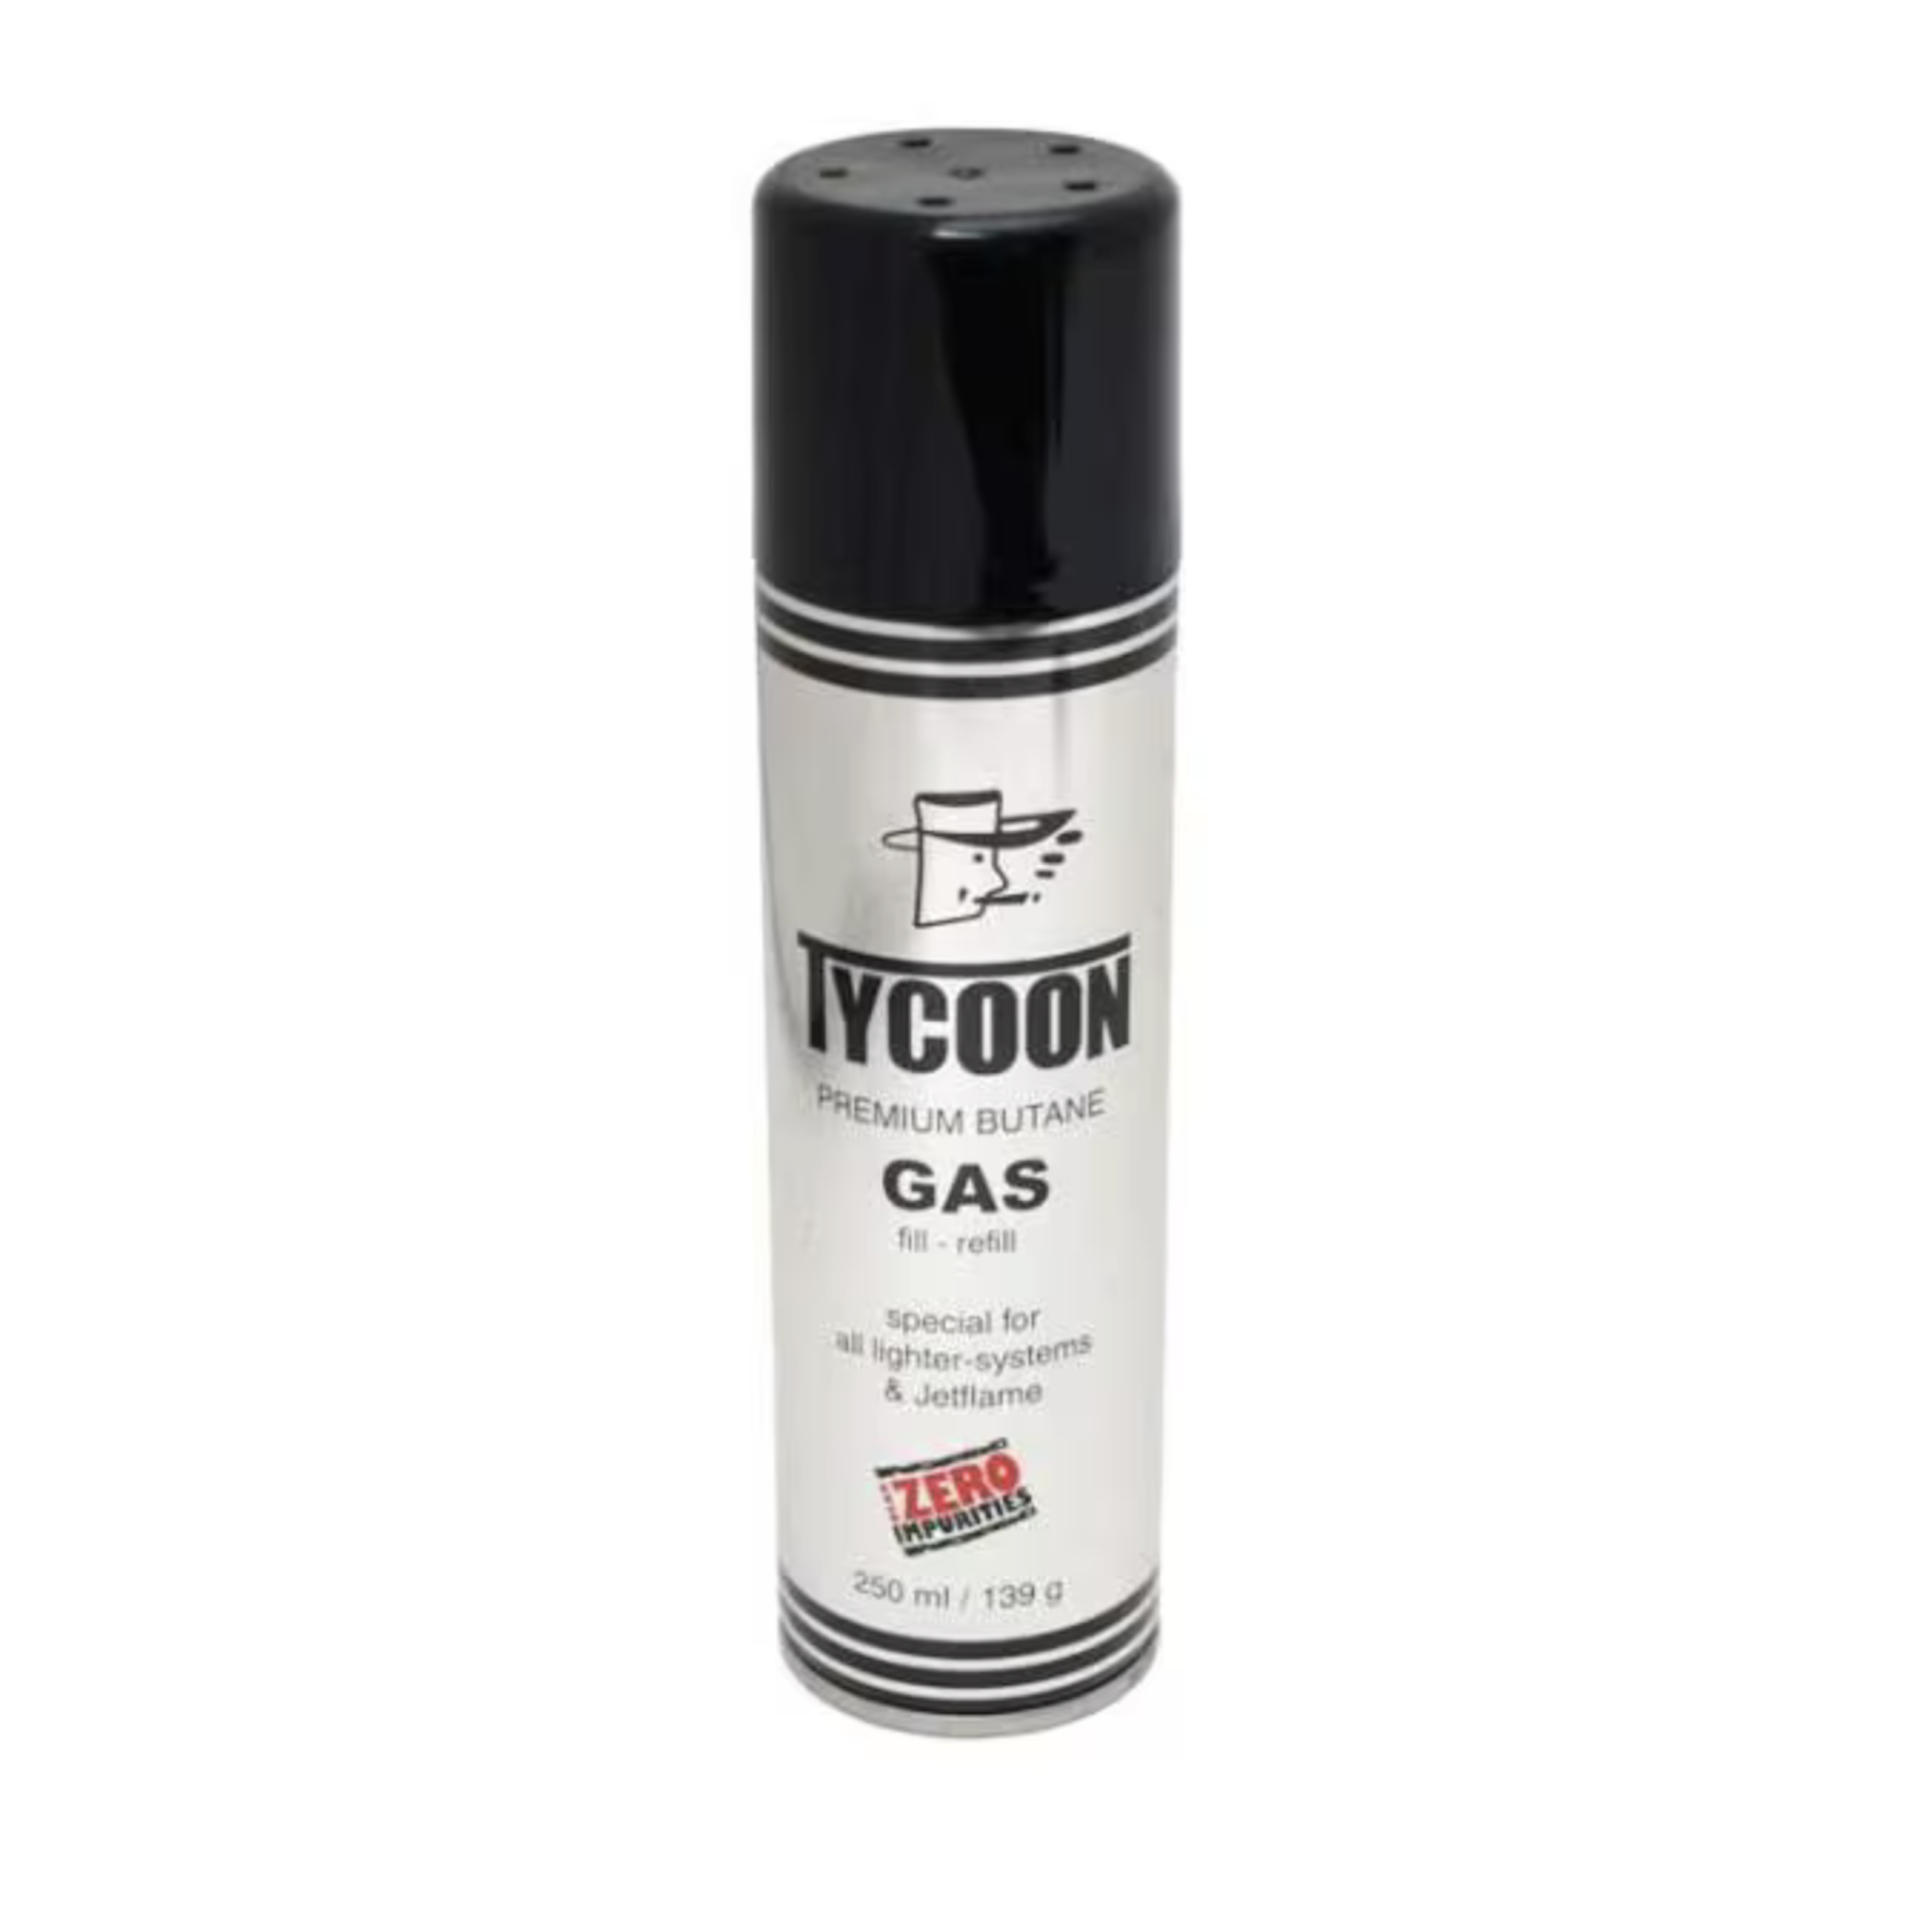 TYCOON Premiumgas für Feuerzeuge 250 ml